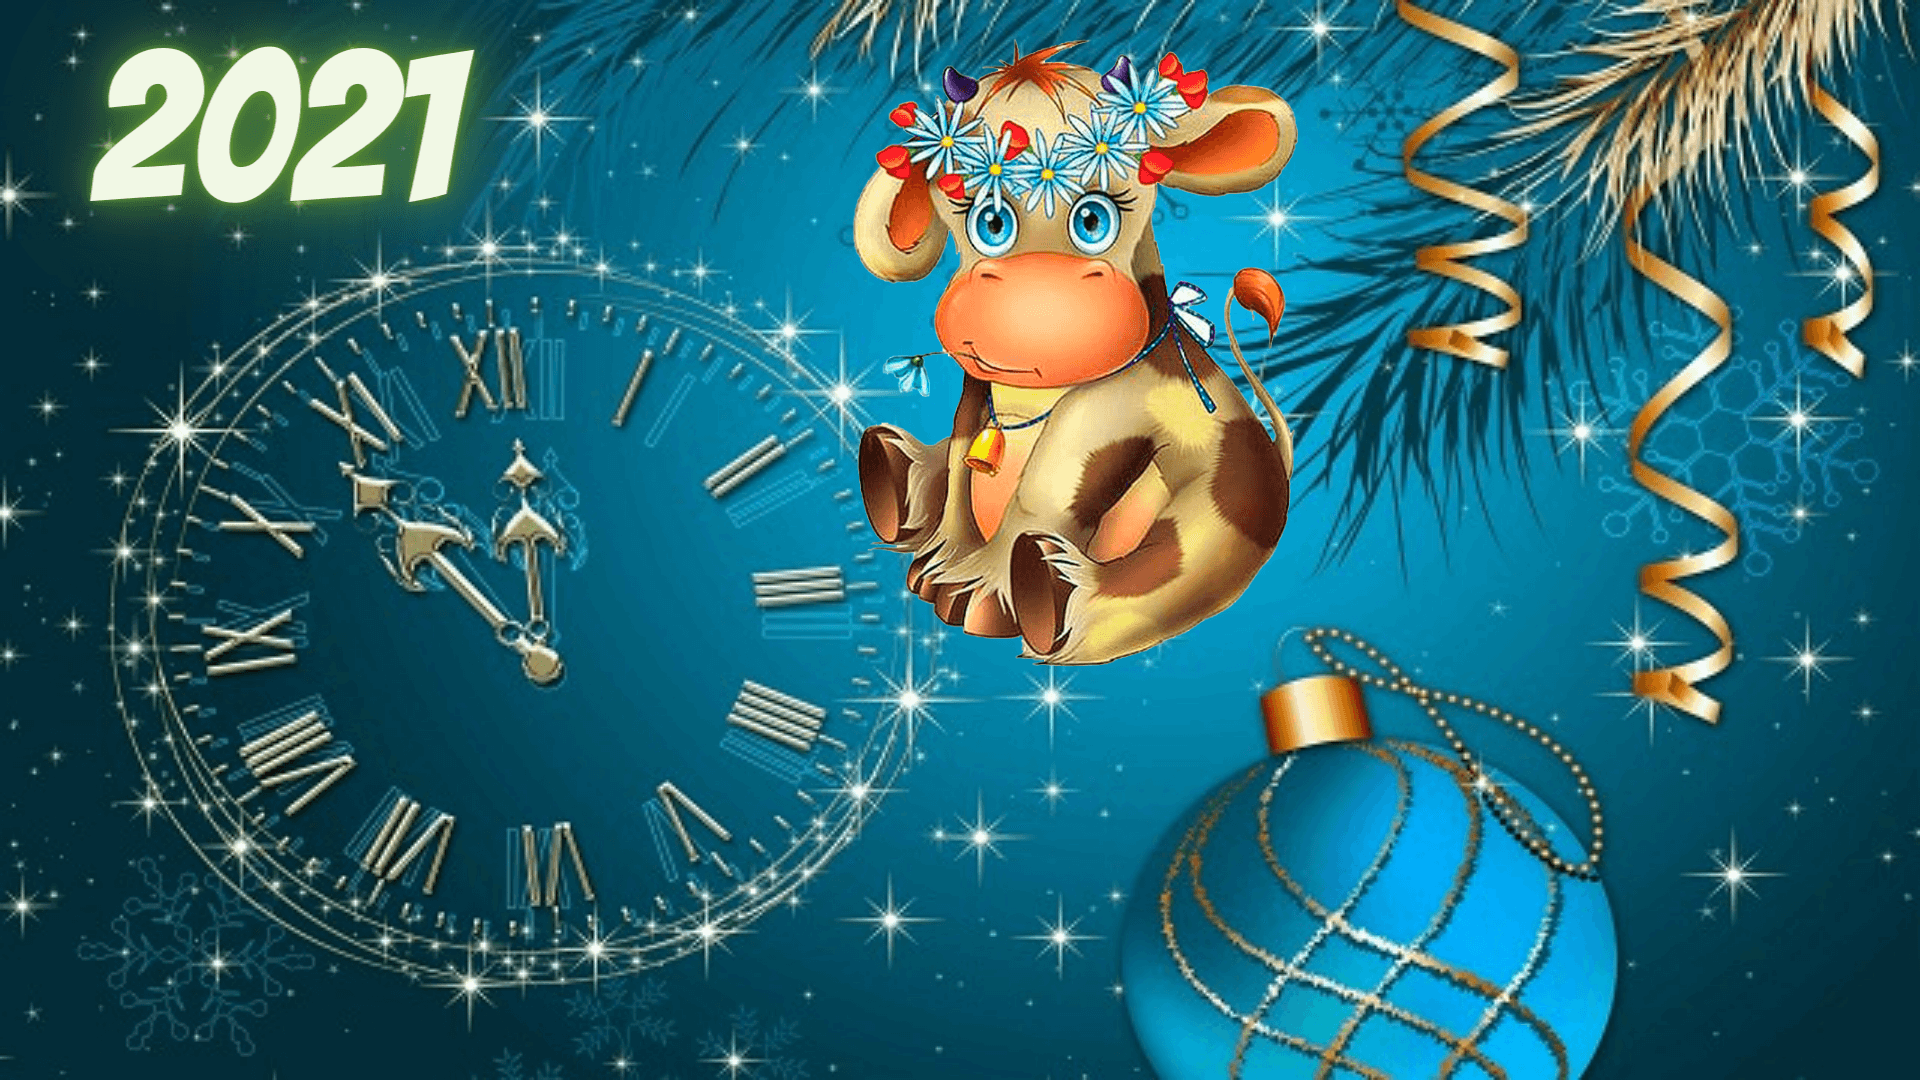 Заставки на Новый год 2021 - картинки на экран с быками